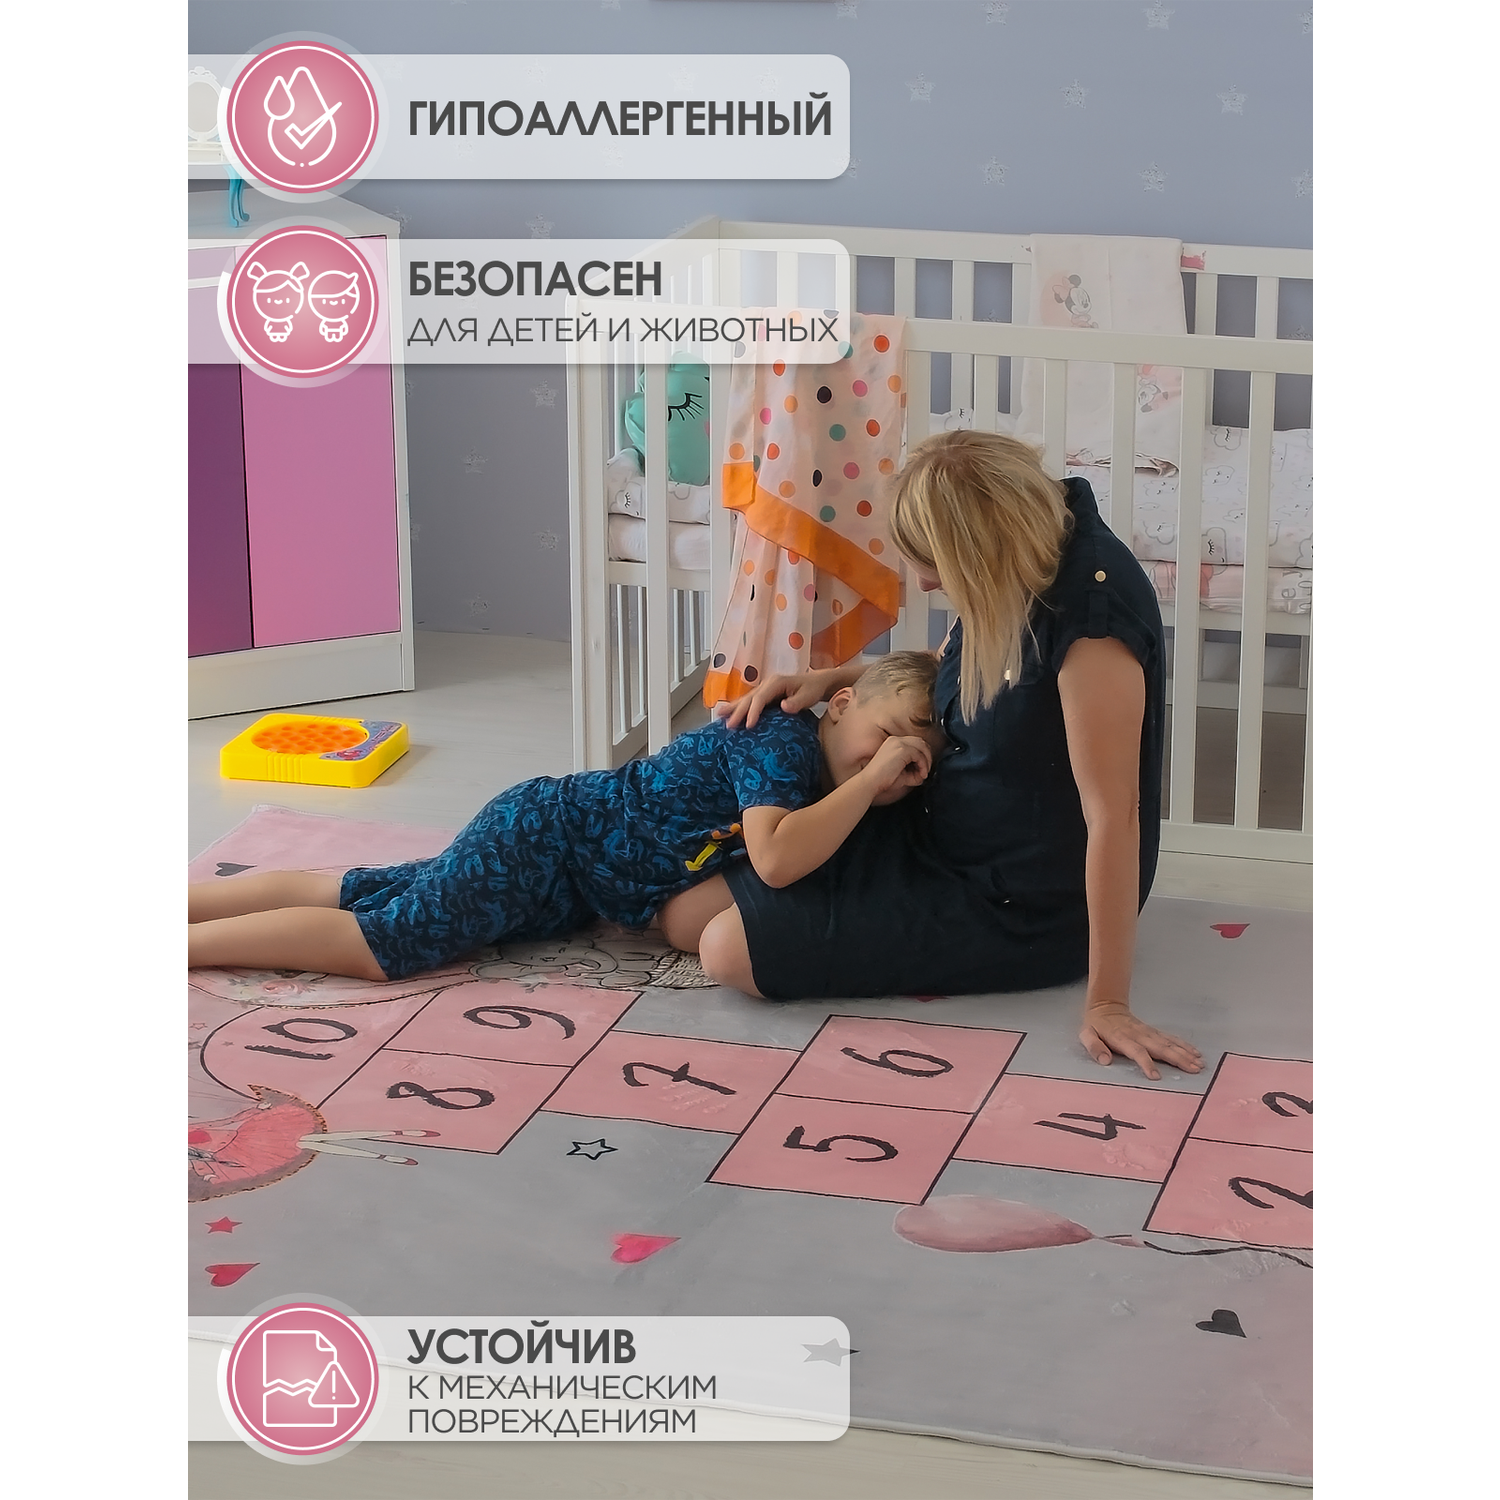 Ковер комнатный детский KOVRIKANA классики серый розовый 160см на 225см - фото 2